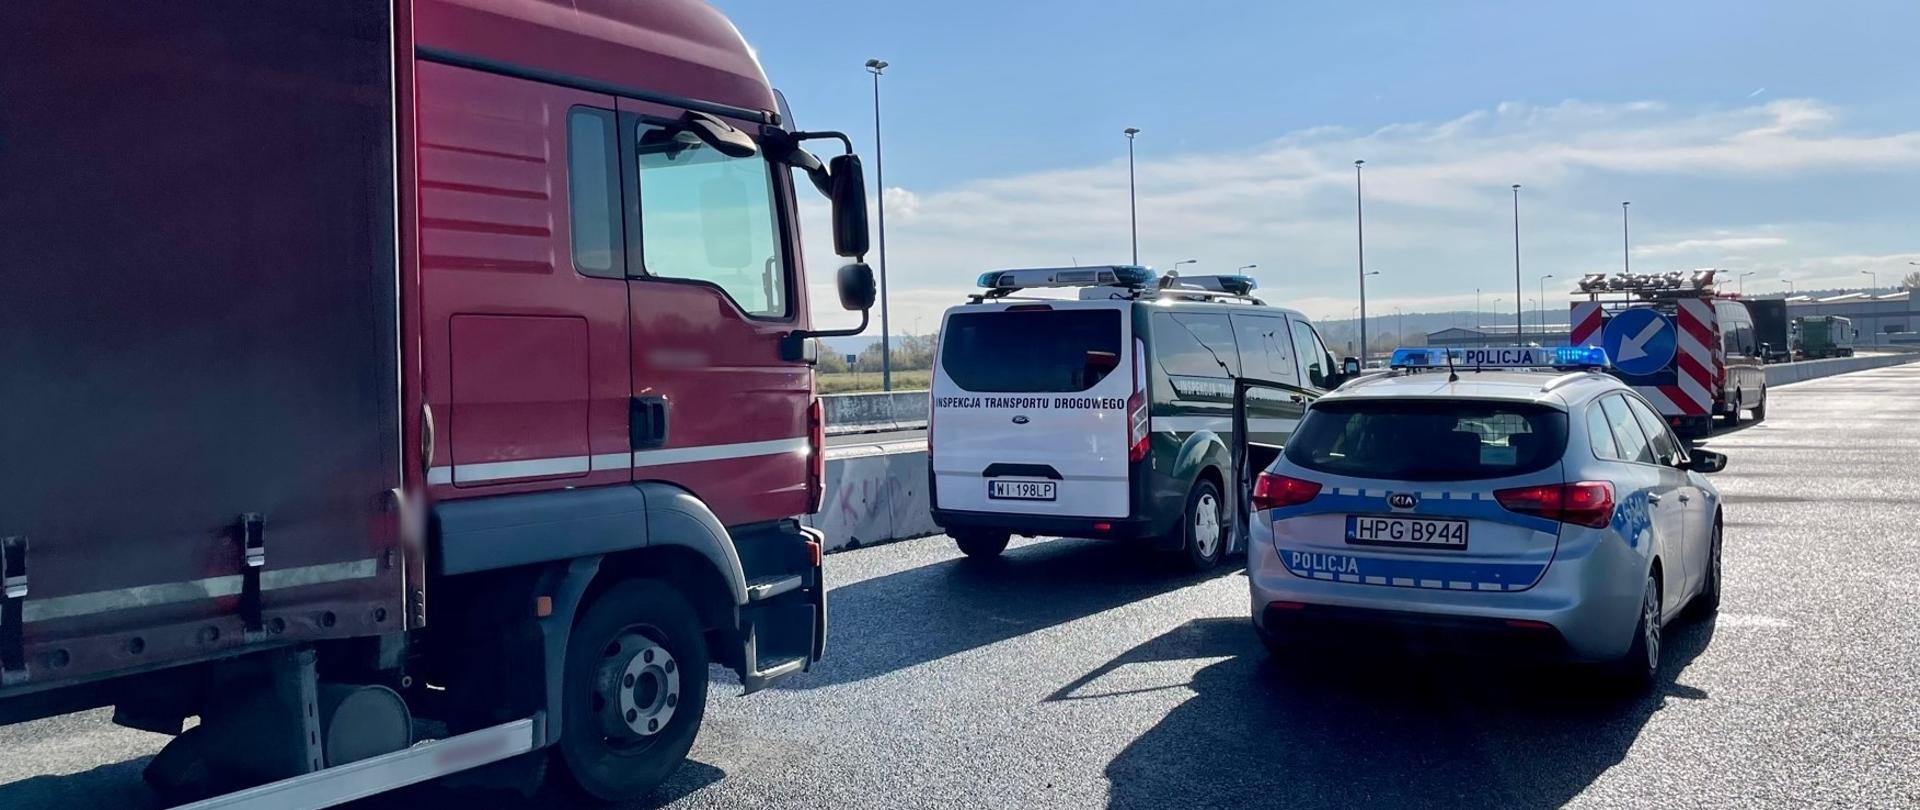 Od lewej: przód i prawy bok kabiny ciężarówki zatrzymanej do kontroli drogowej na małopolskim odcinku autostrady A4. Obok stoi oznakowany furgon Inspekcji Transportu Drogowego i radiowóz Policji.